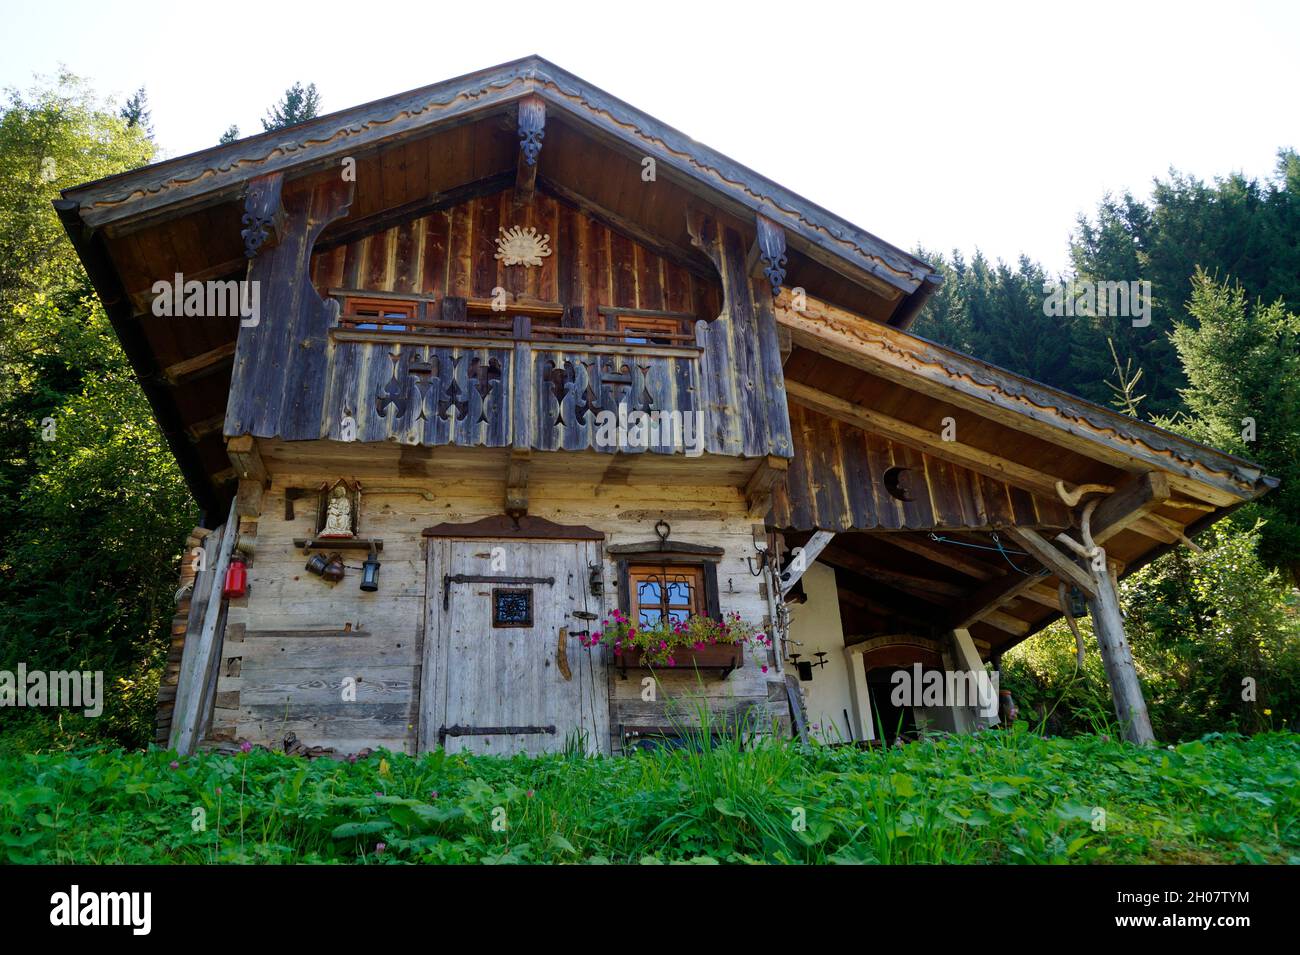 Una bella cabina rustica tradizionale in legno nelle Alpi austriache della regione di Dachstein (Austria) Foto Stock